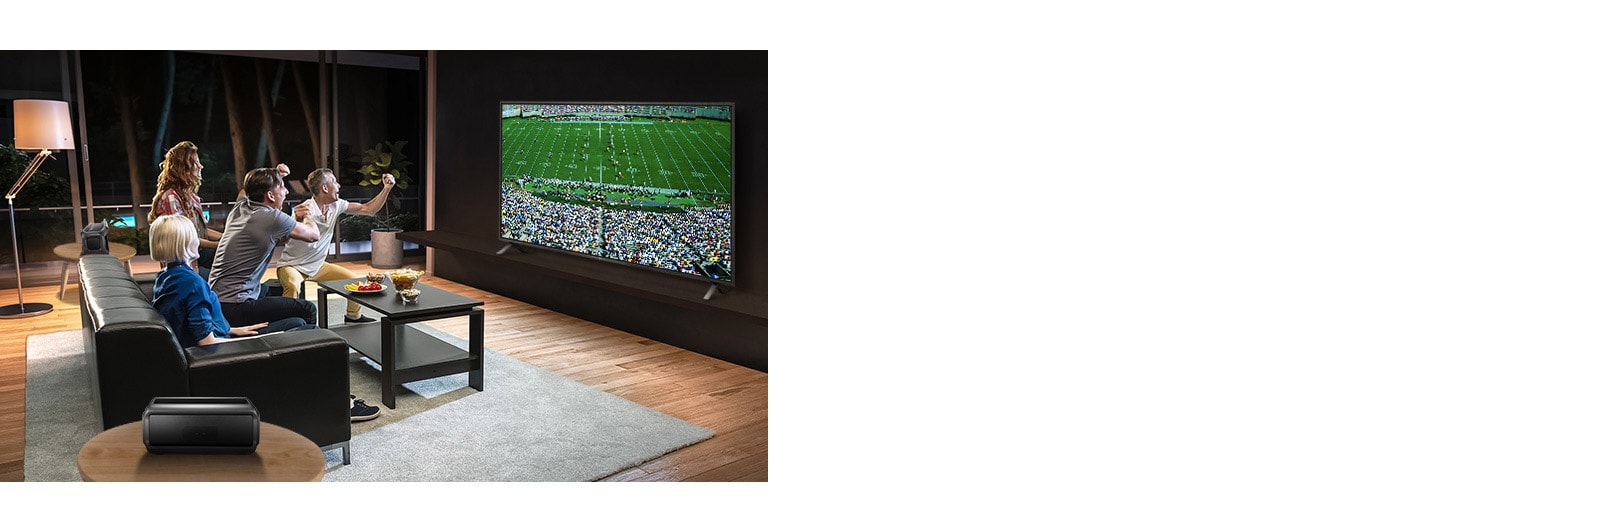 Le persone guardano lo sport sulla TV in salotto con altoparlanti Bluetooth posteriori.